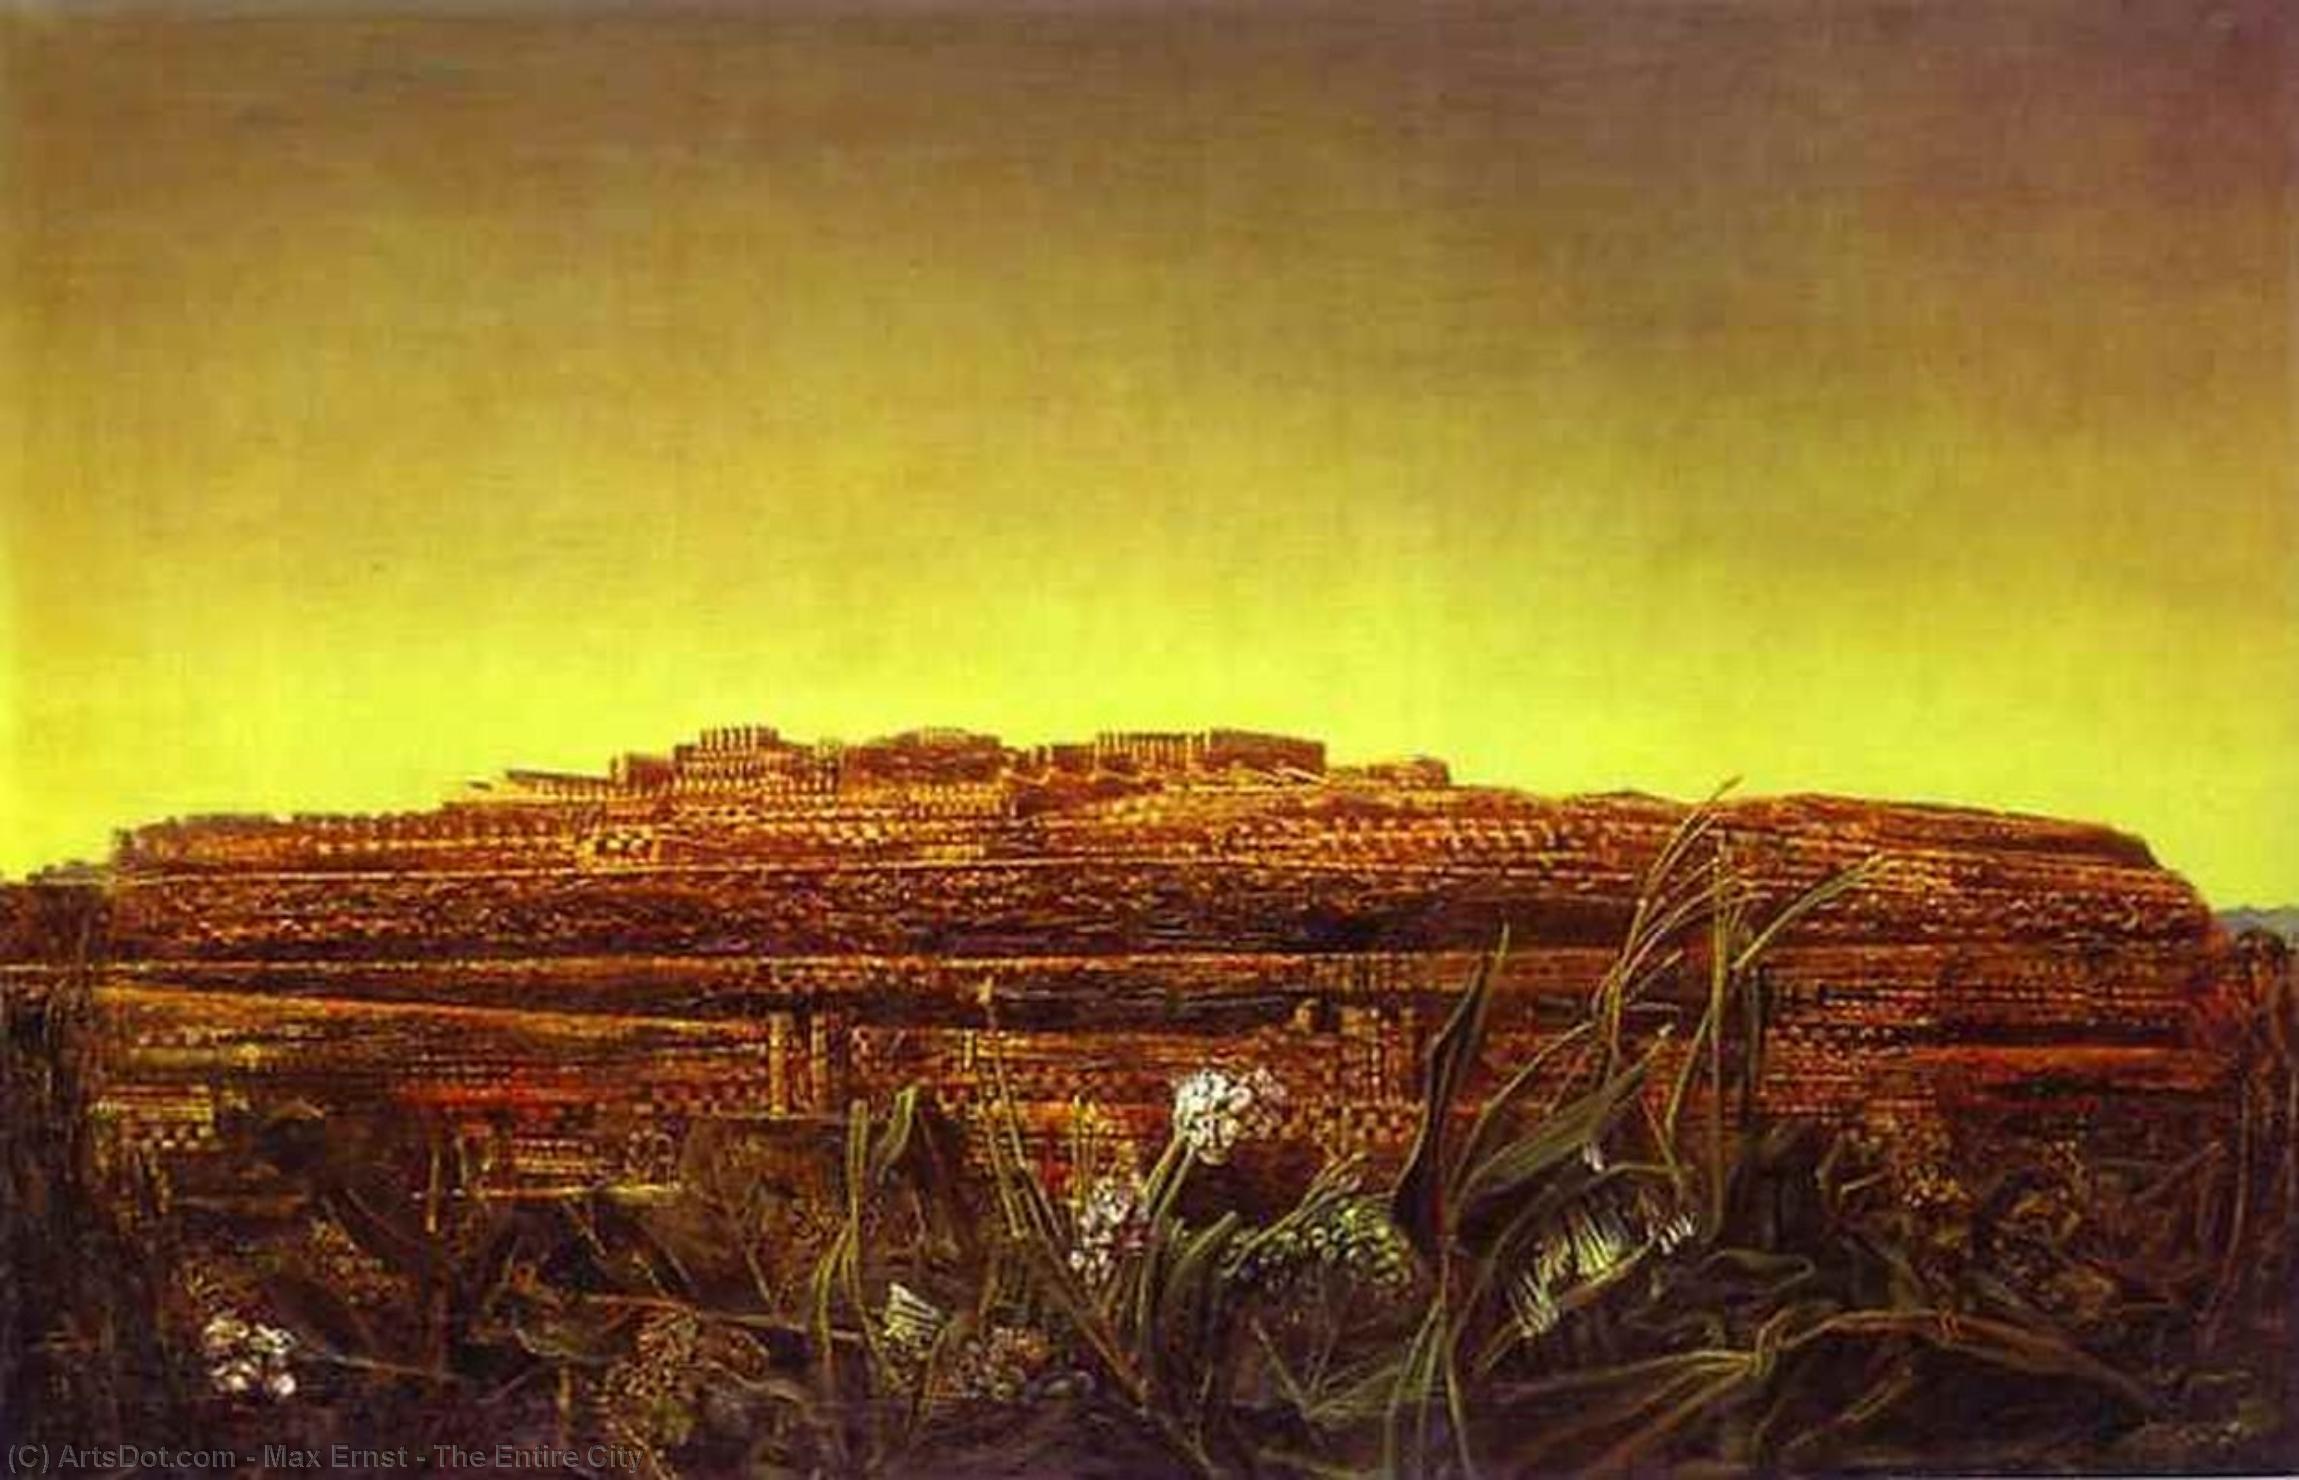 WikiOO.org - Εγκυκλοπαίδεια Καλών Τεχνών - Ζωγραφική, έργα τέχνης Max Ernst - The Entire City